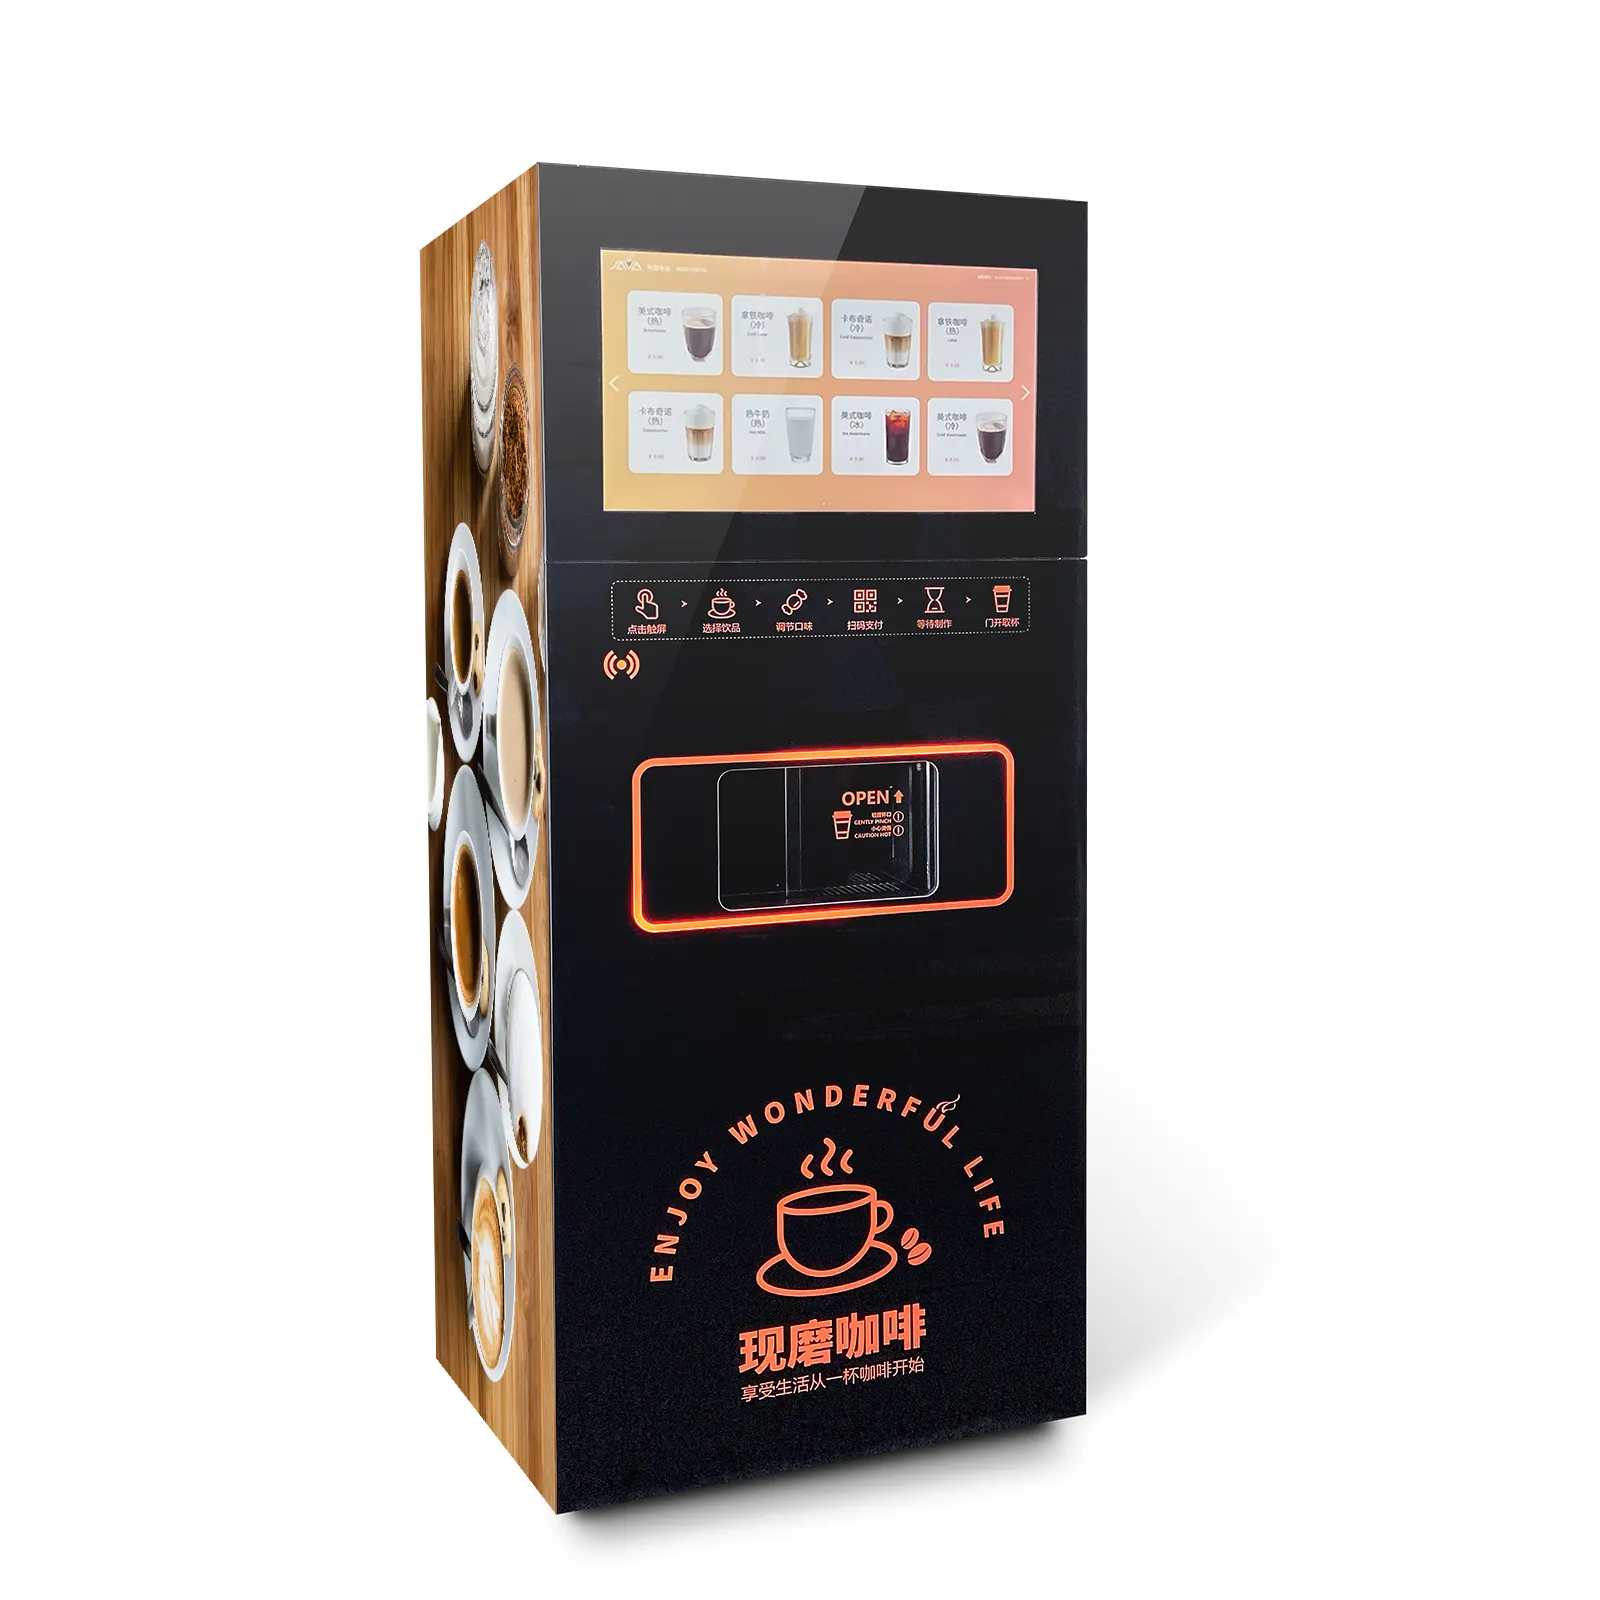 Hoch dichte Kaffee automaten box 24 Stunden Kaffee automaten Bechersp ender für Kaffee automaten